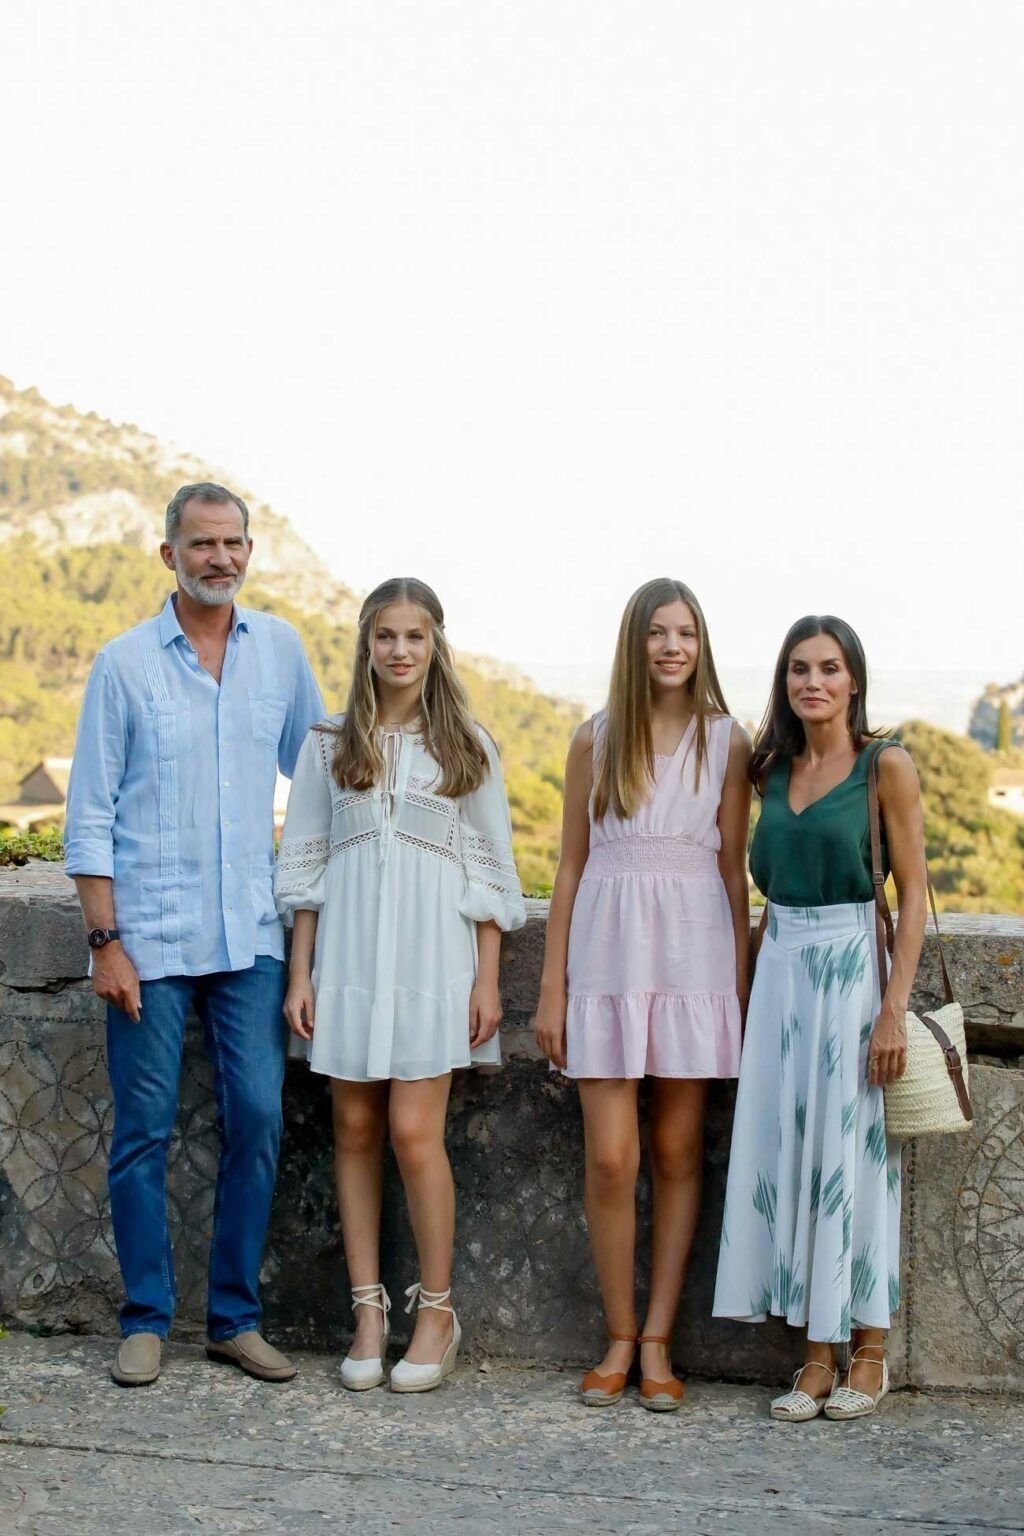 королевская семья в испании